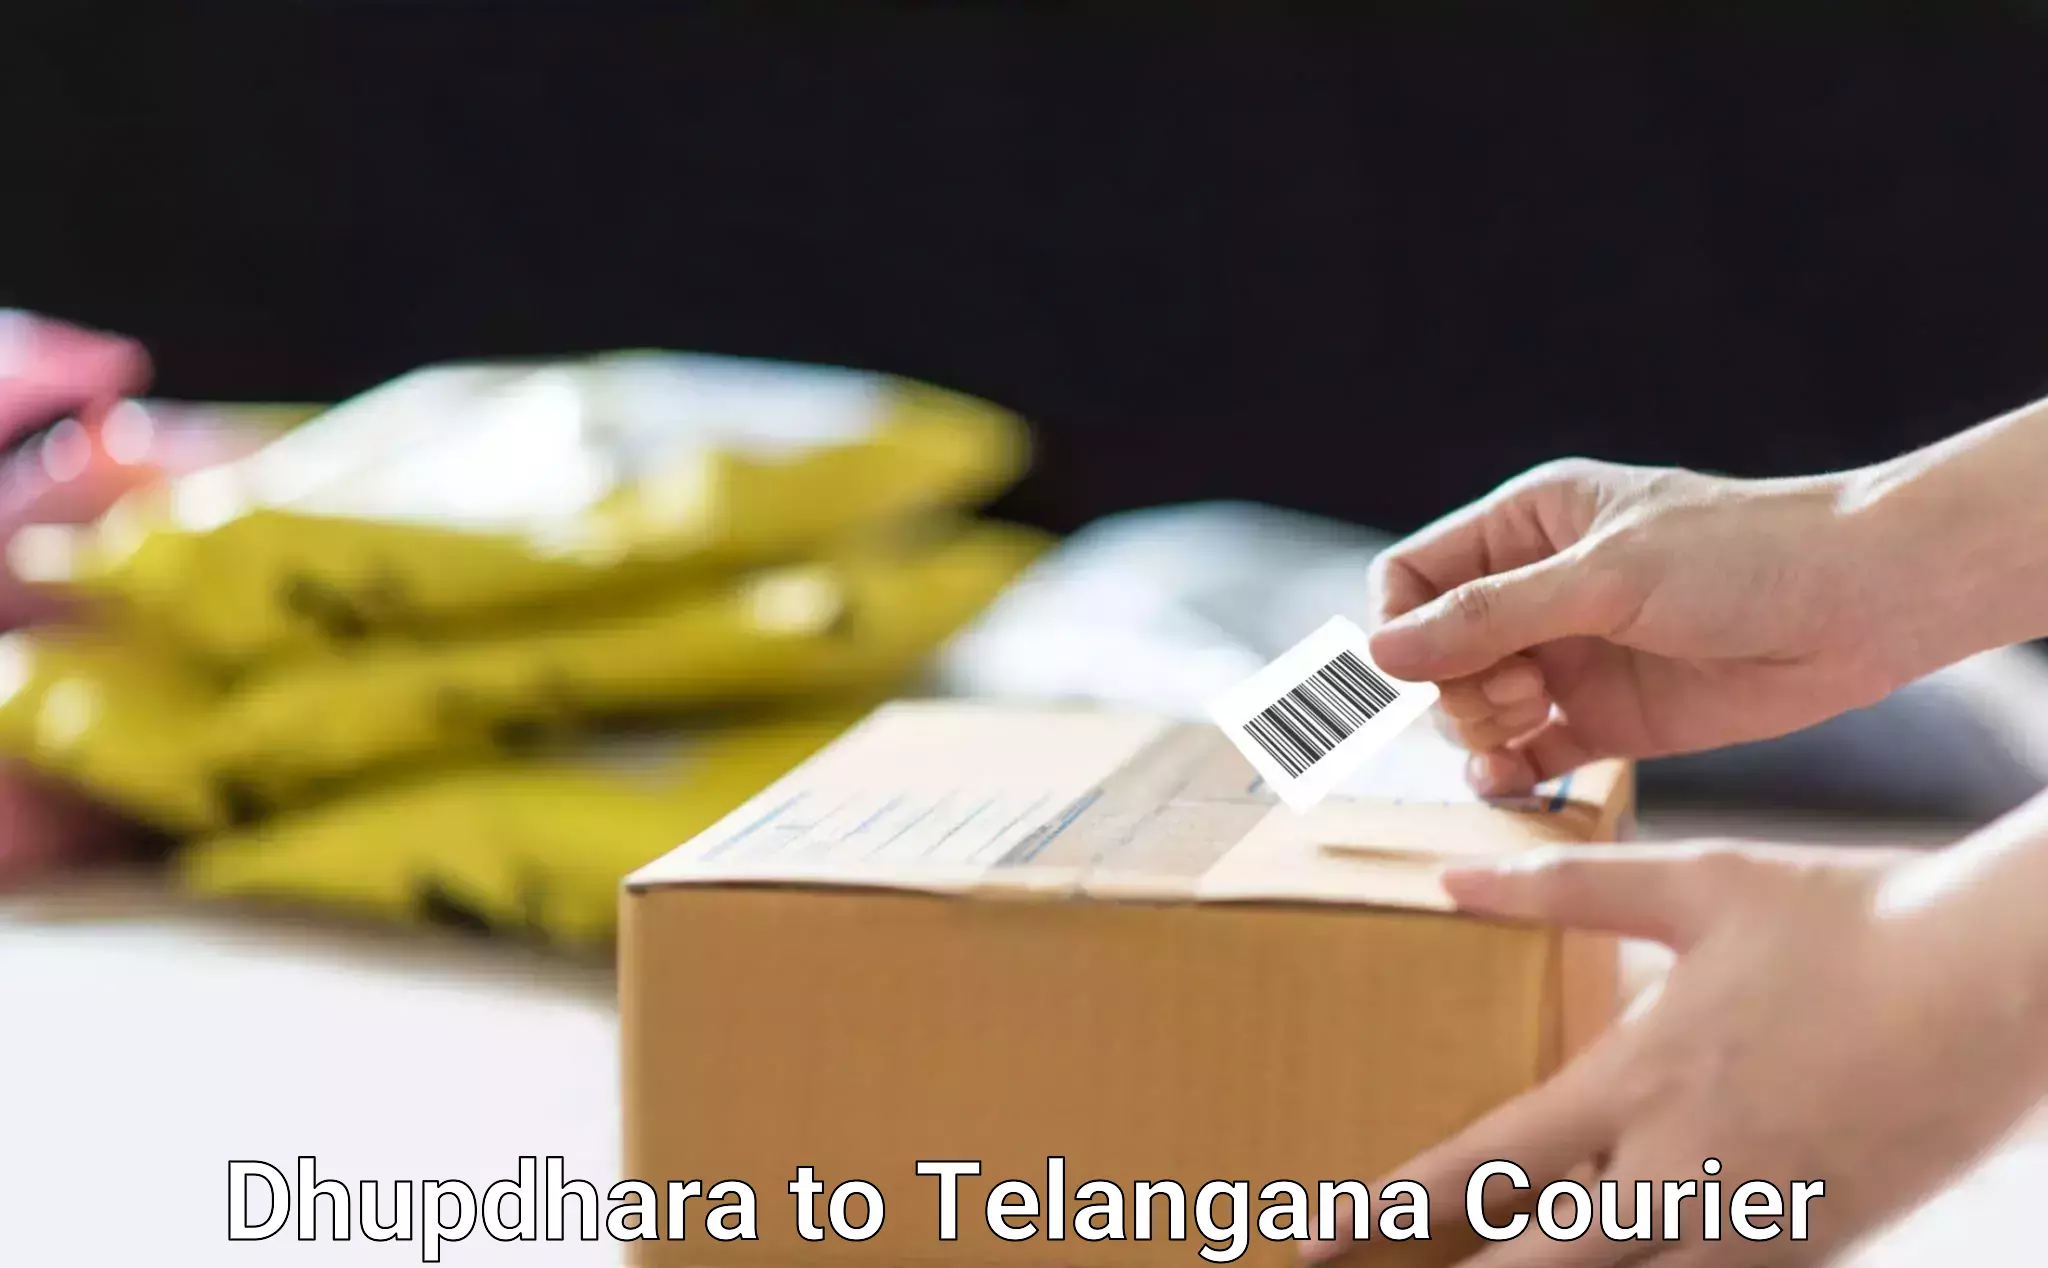 Lightweight courier Dhupdhara to Kamareddy